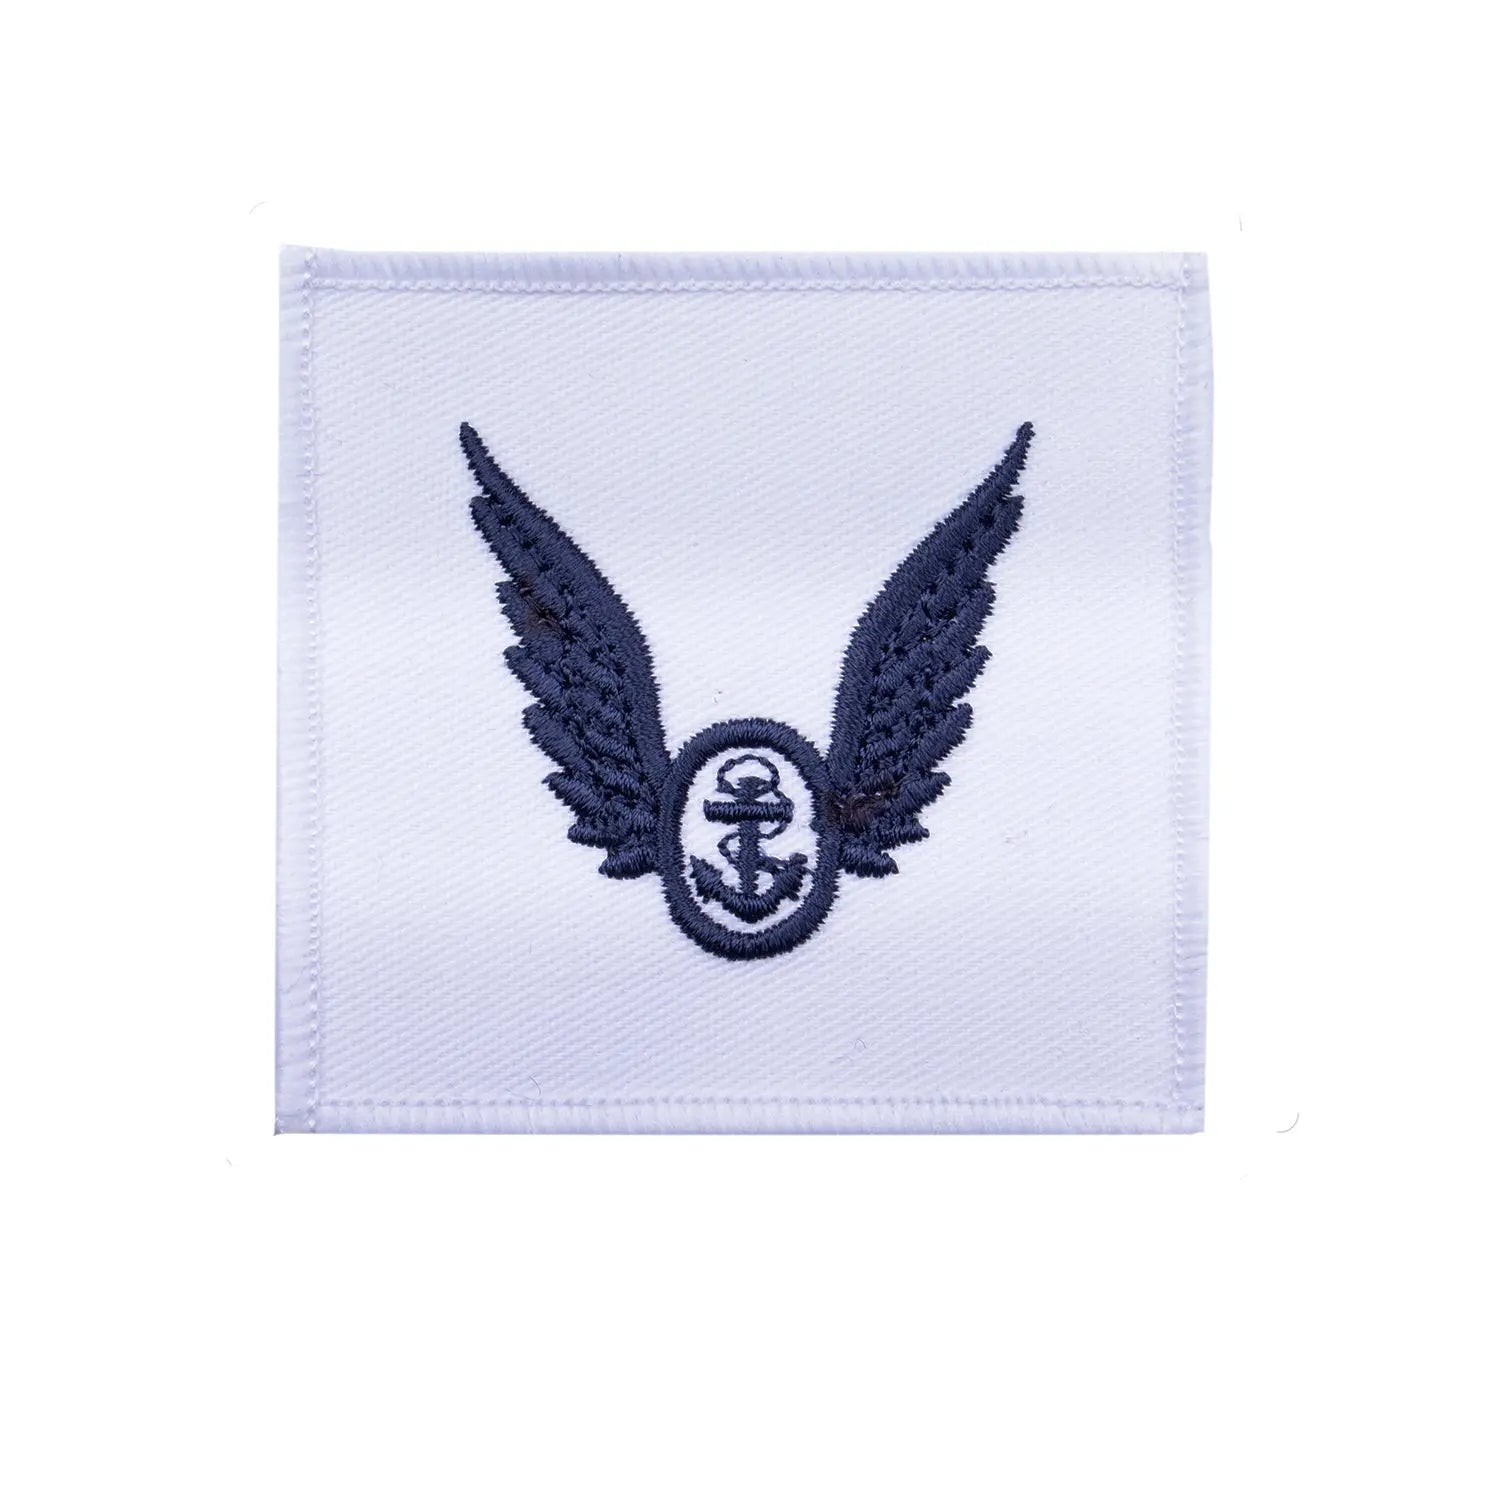 Royal Navy Able Rate Fleet Air Crew Badge · Sleeve wyedean